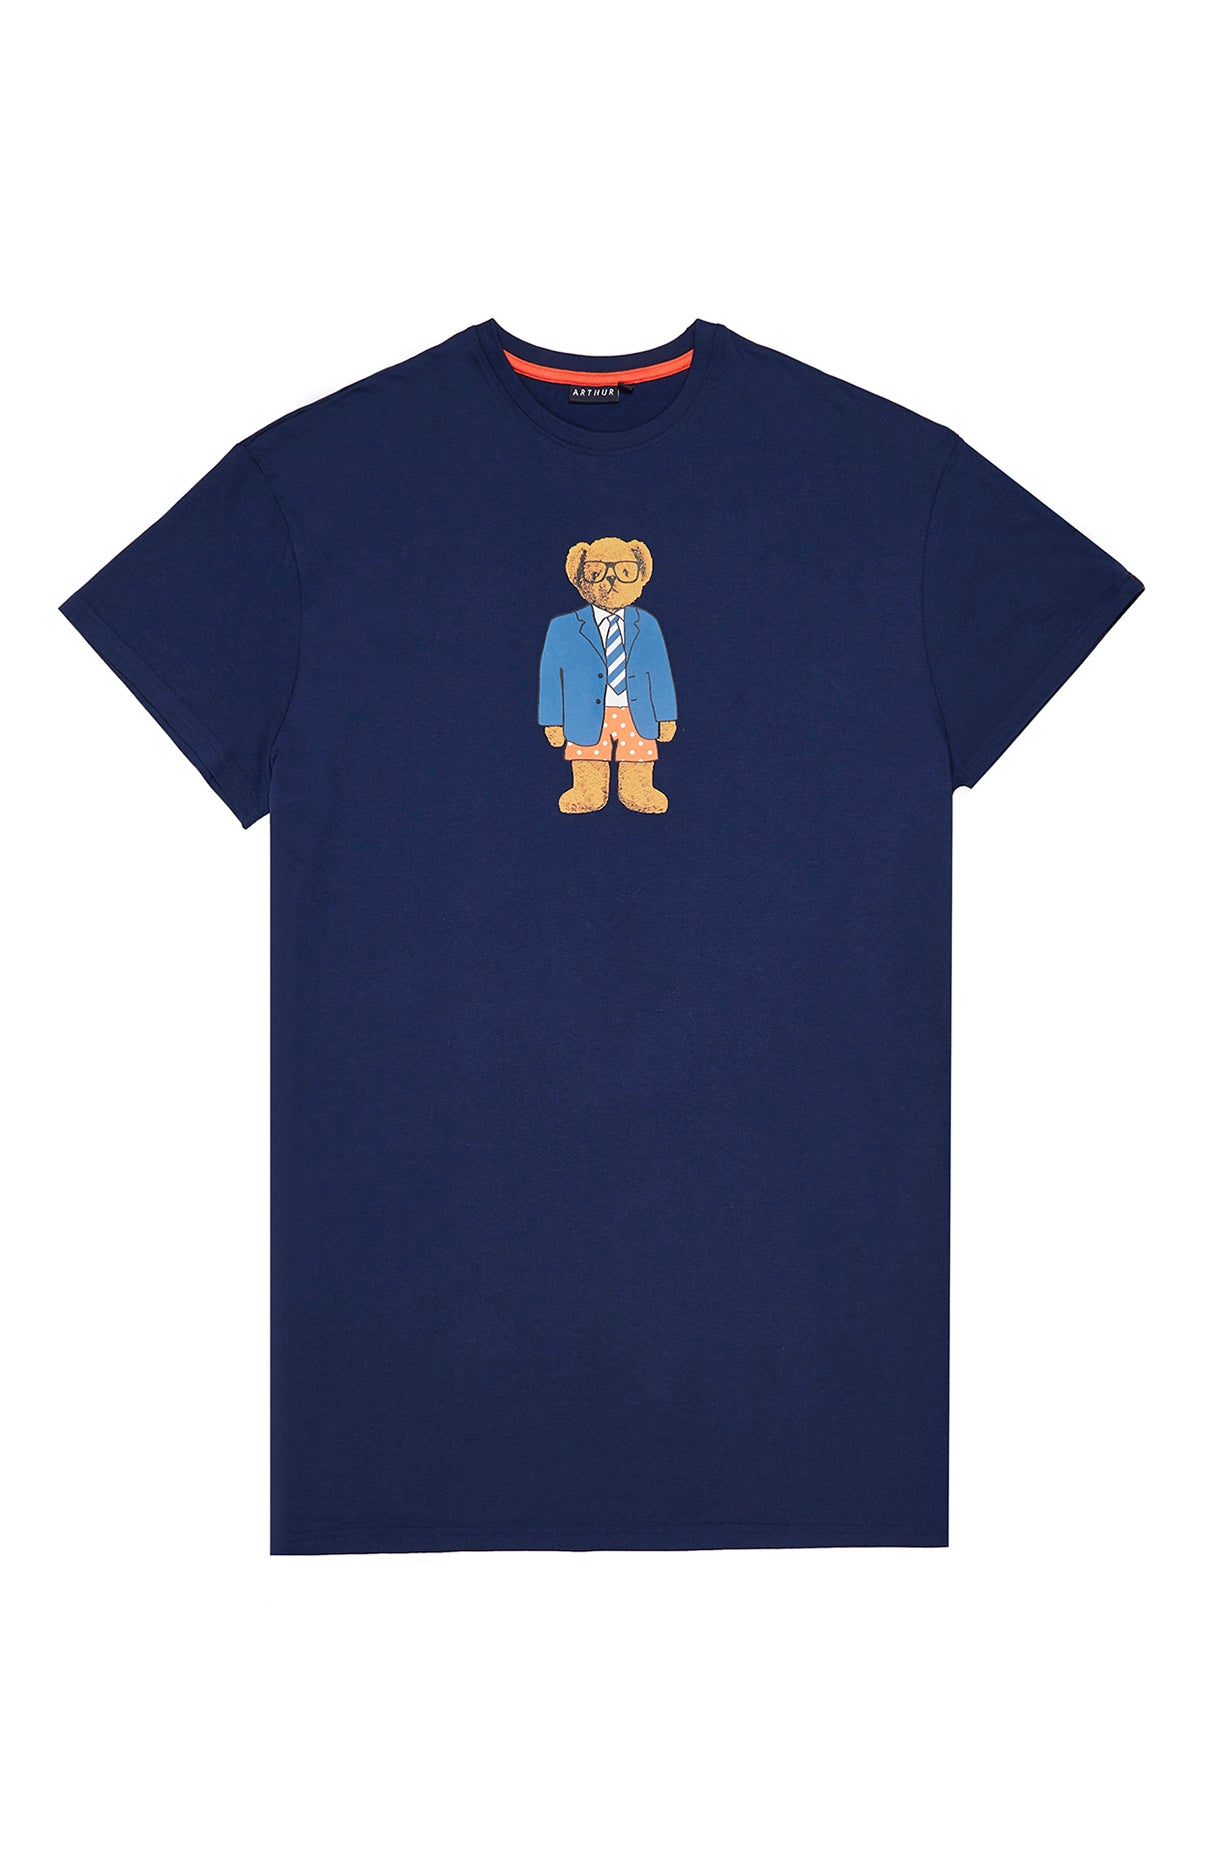 Maxi Tee-shirt Teddy 3